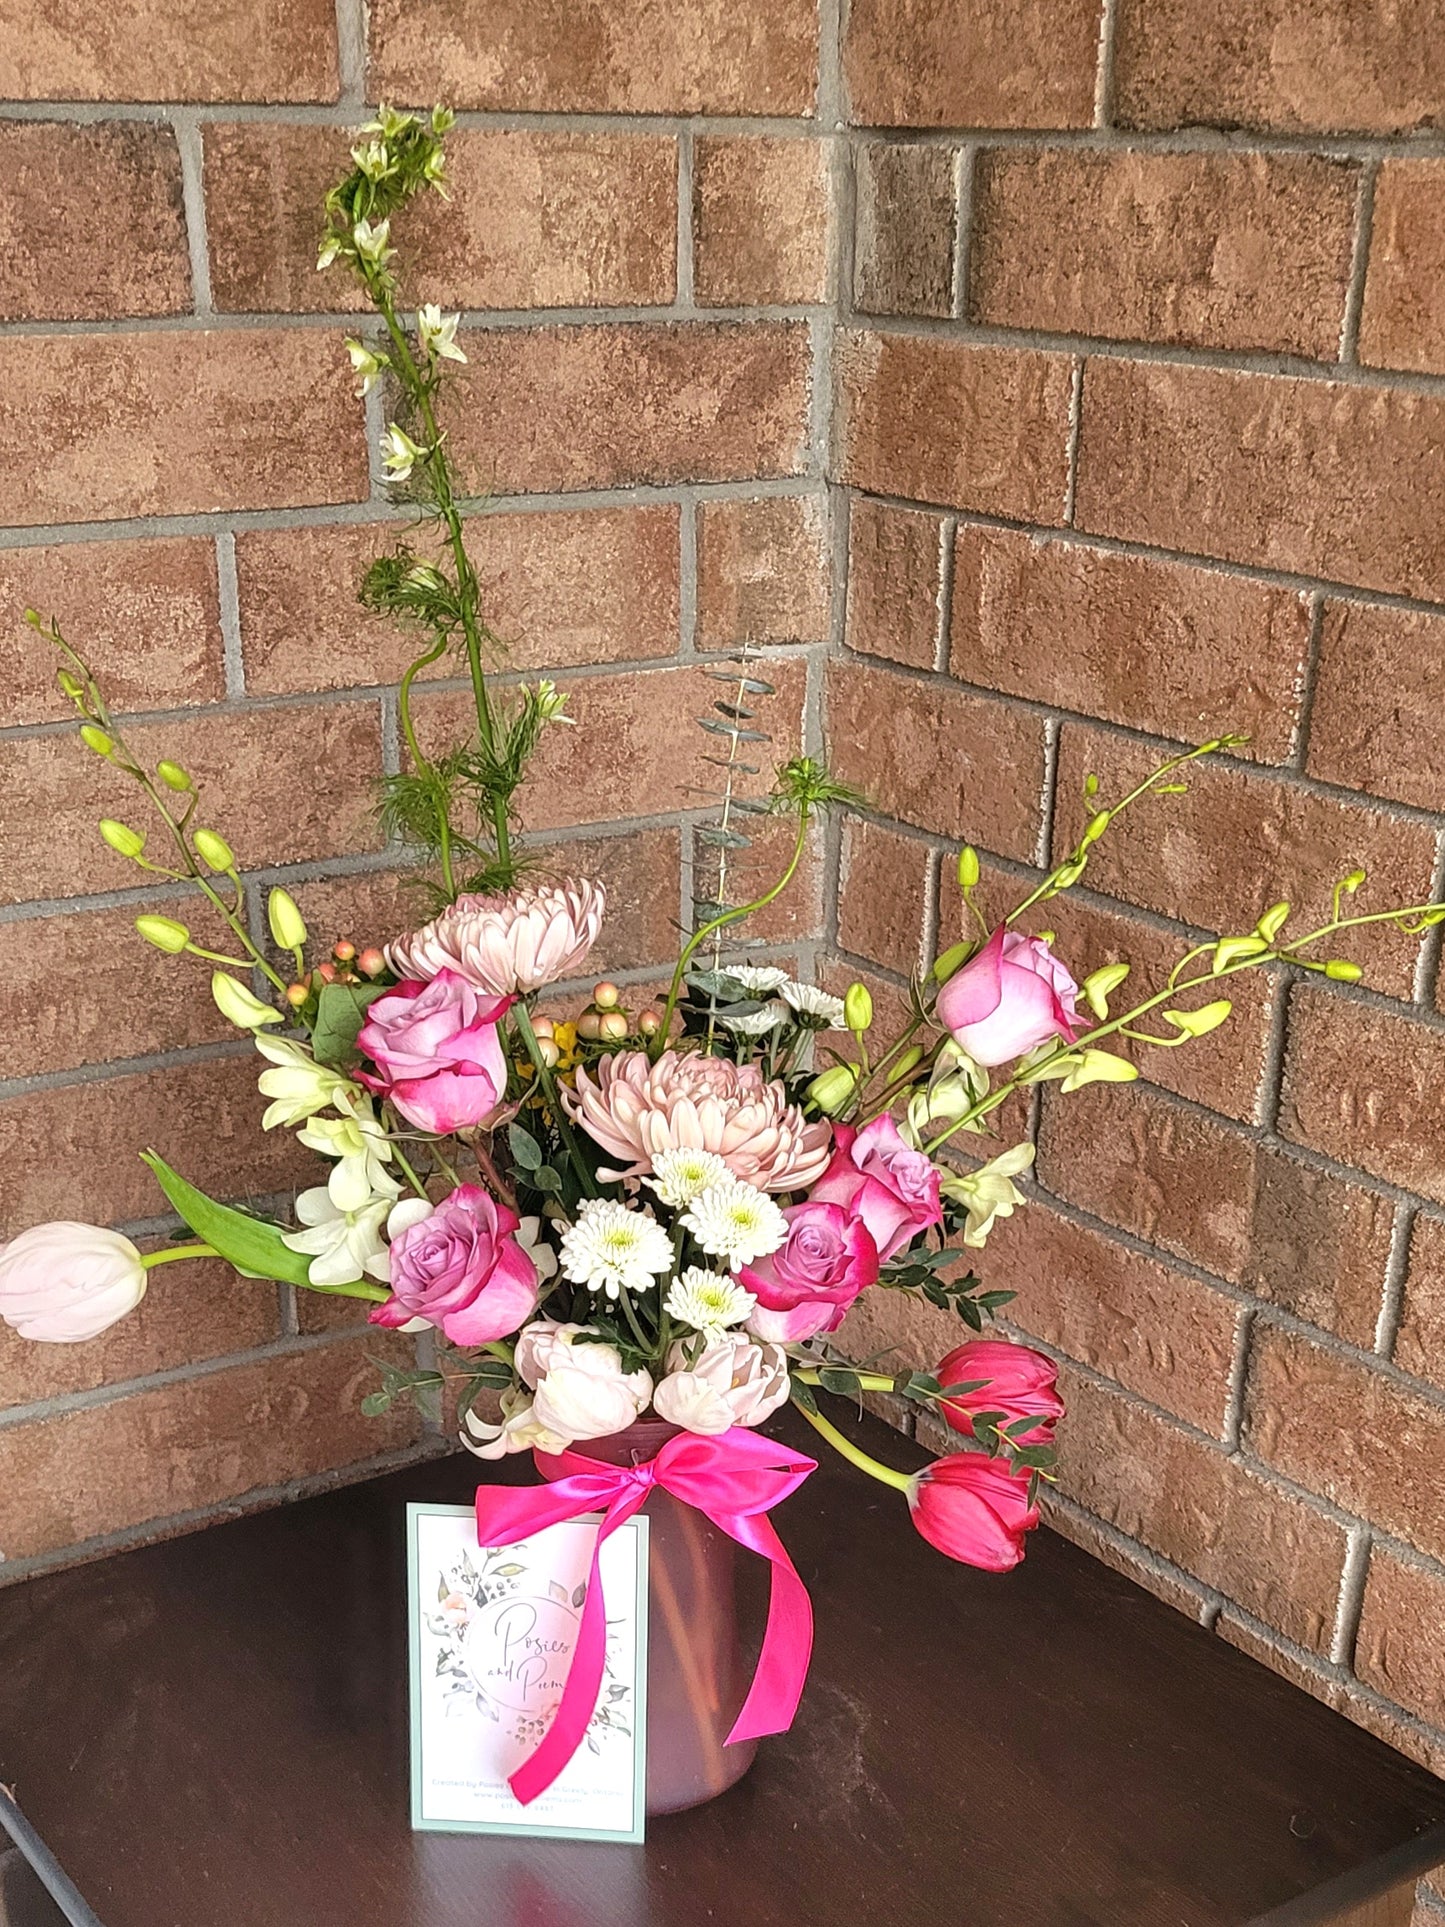 Fresh Floral Arrangement #2 in a Vase